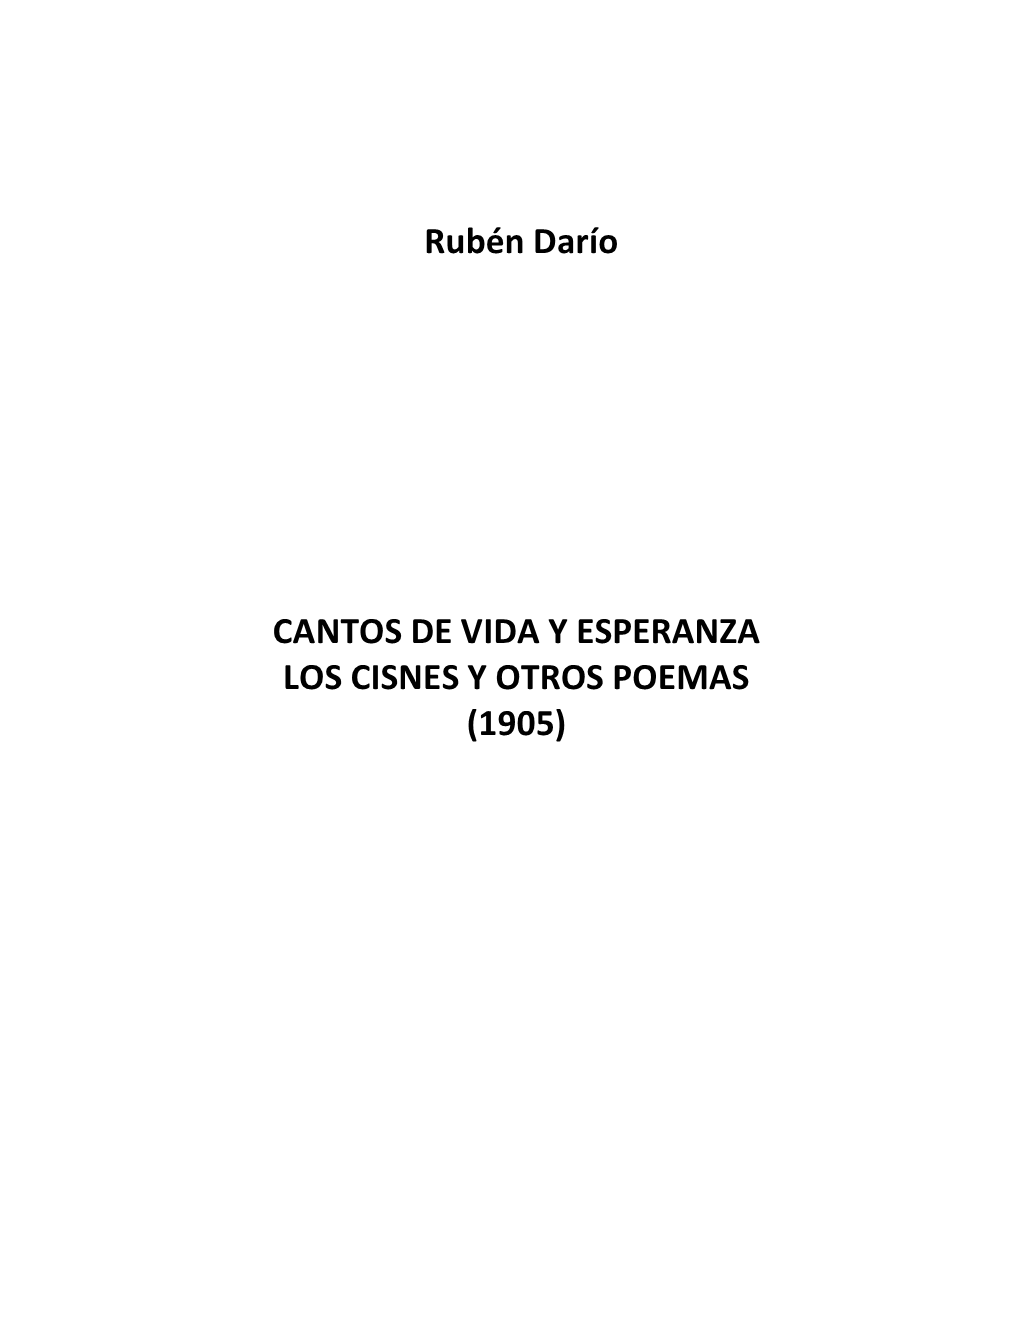 Rubén Darío CANTOS DE VIDA Y ESPERANZA LOS CISNES Y